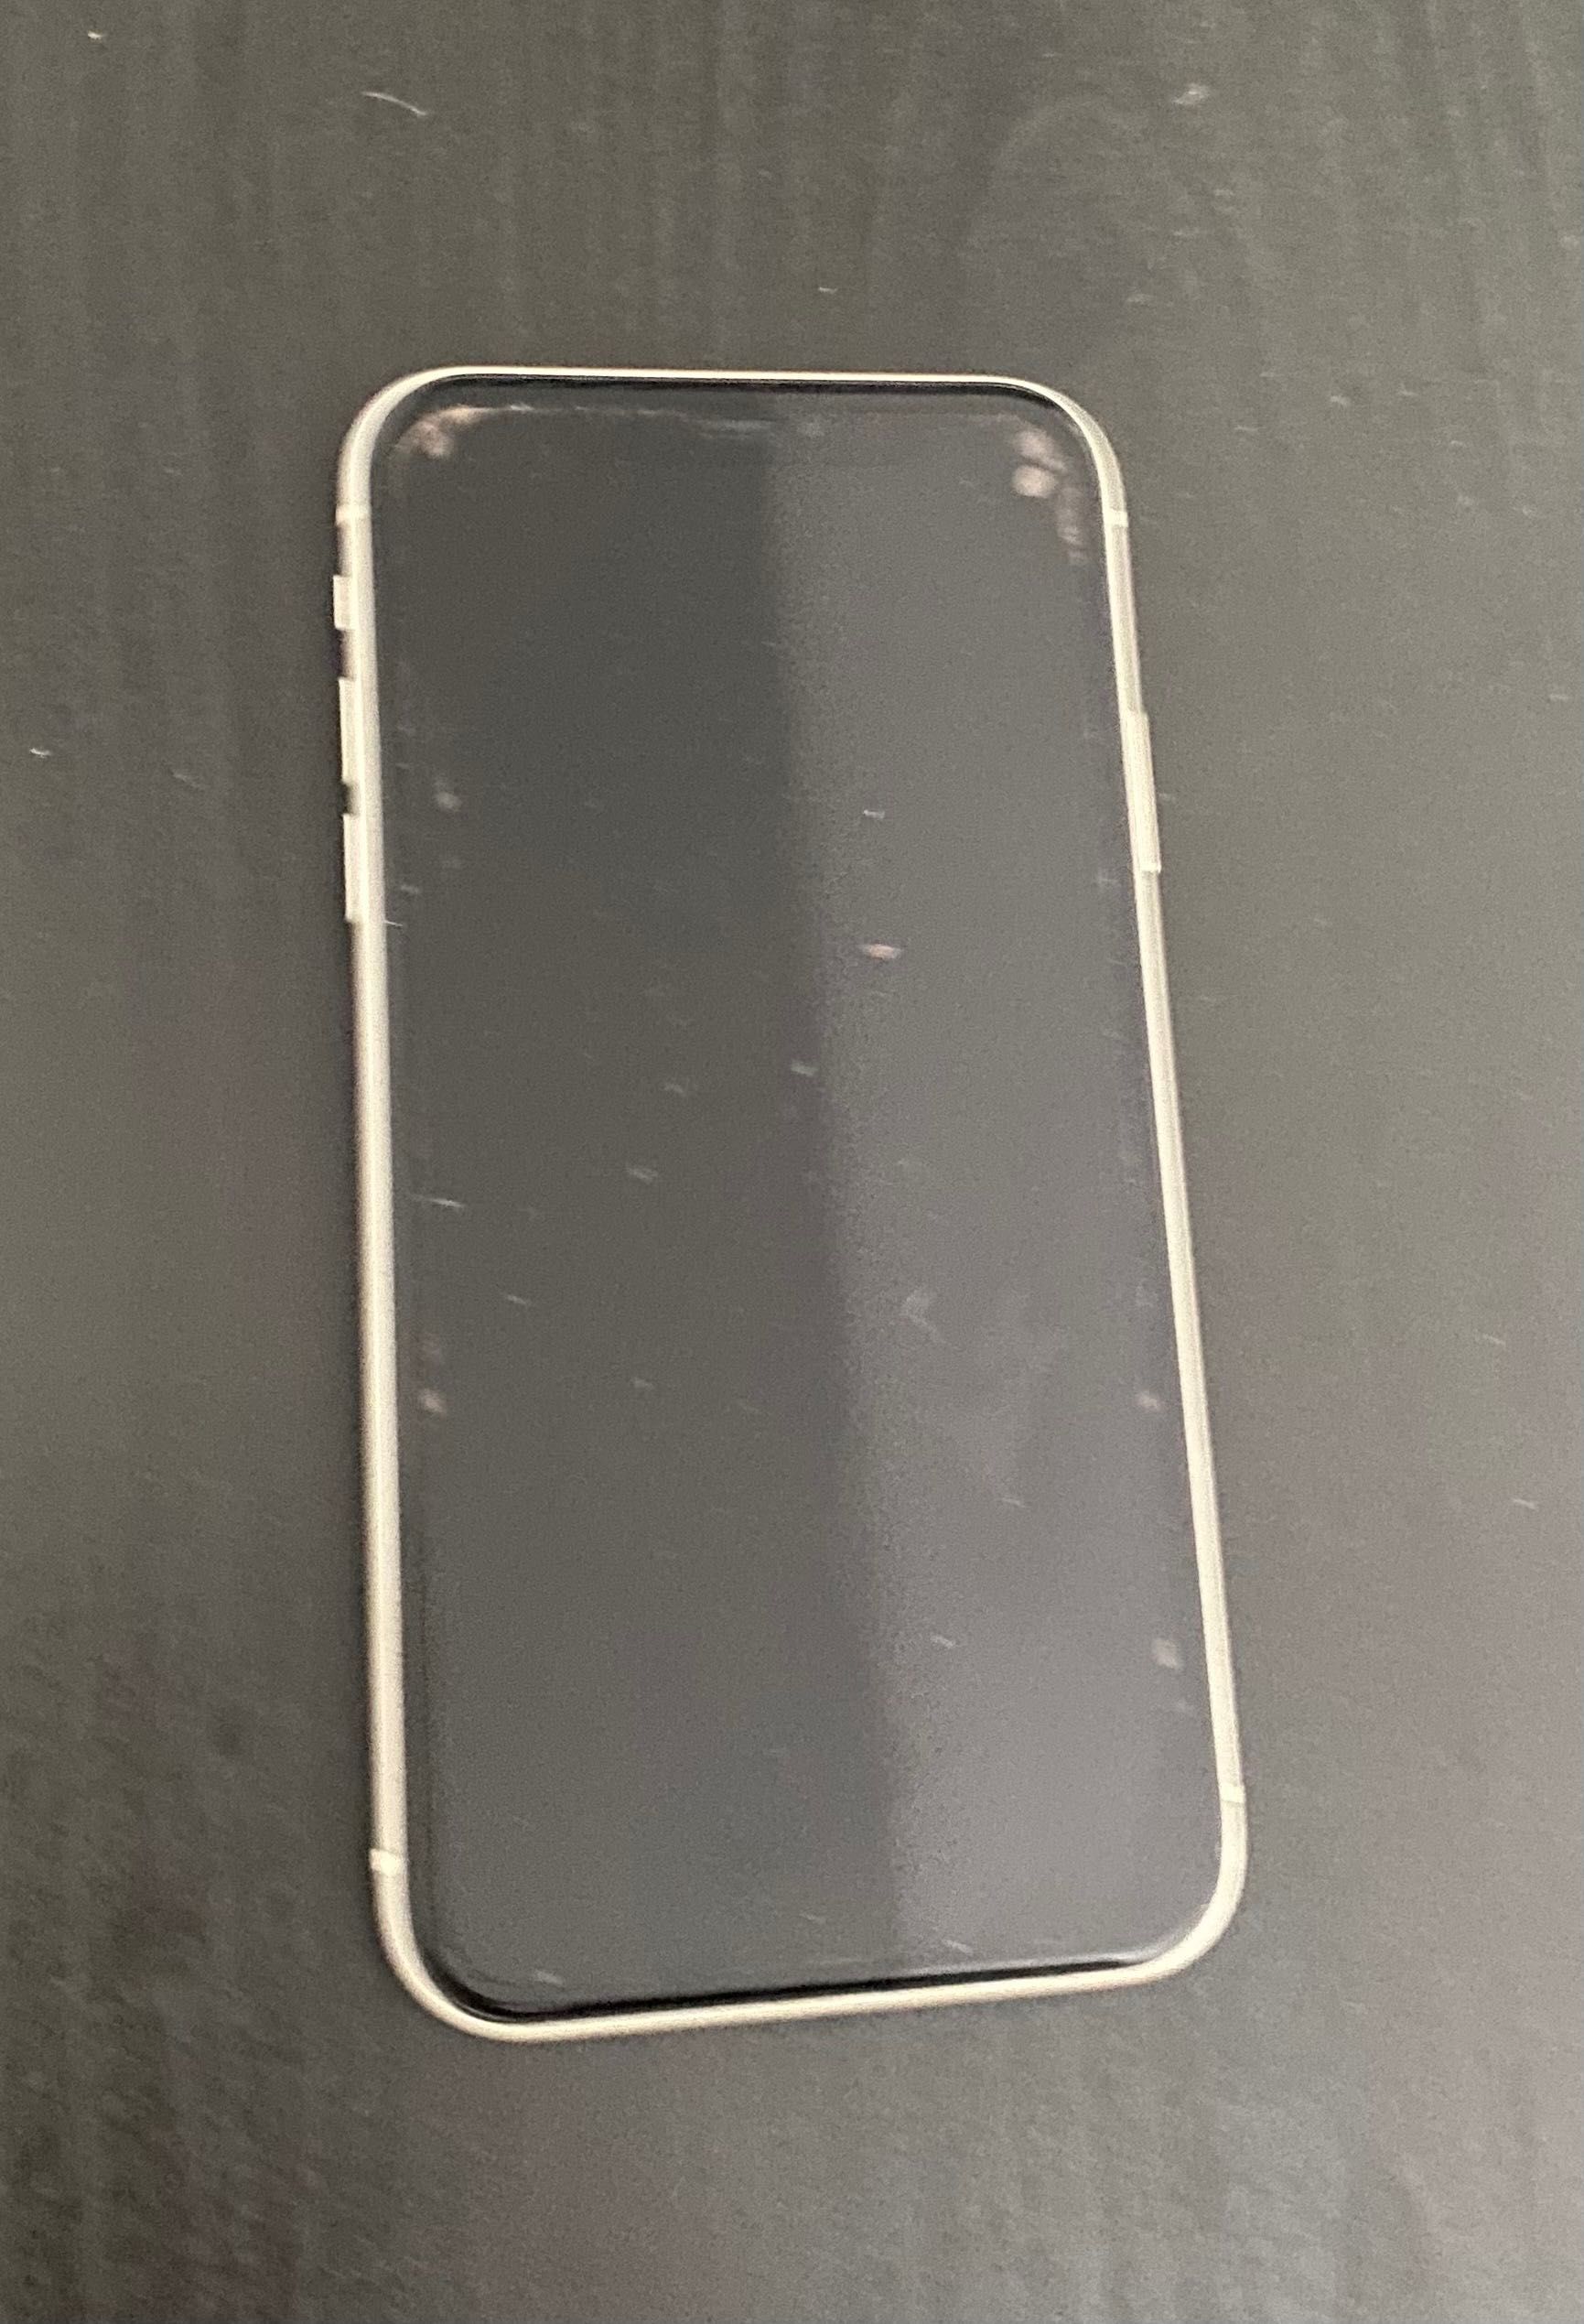 iPhone 11 biały, nie zniszczony